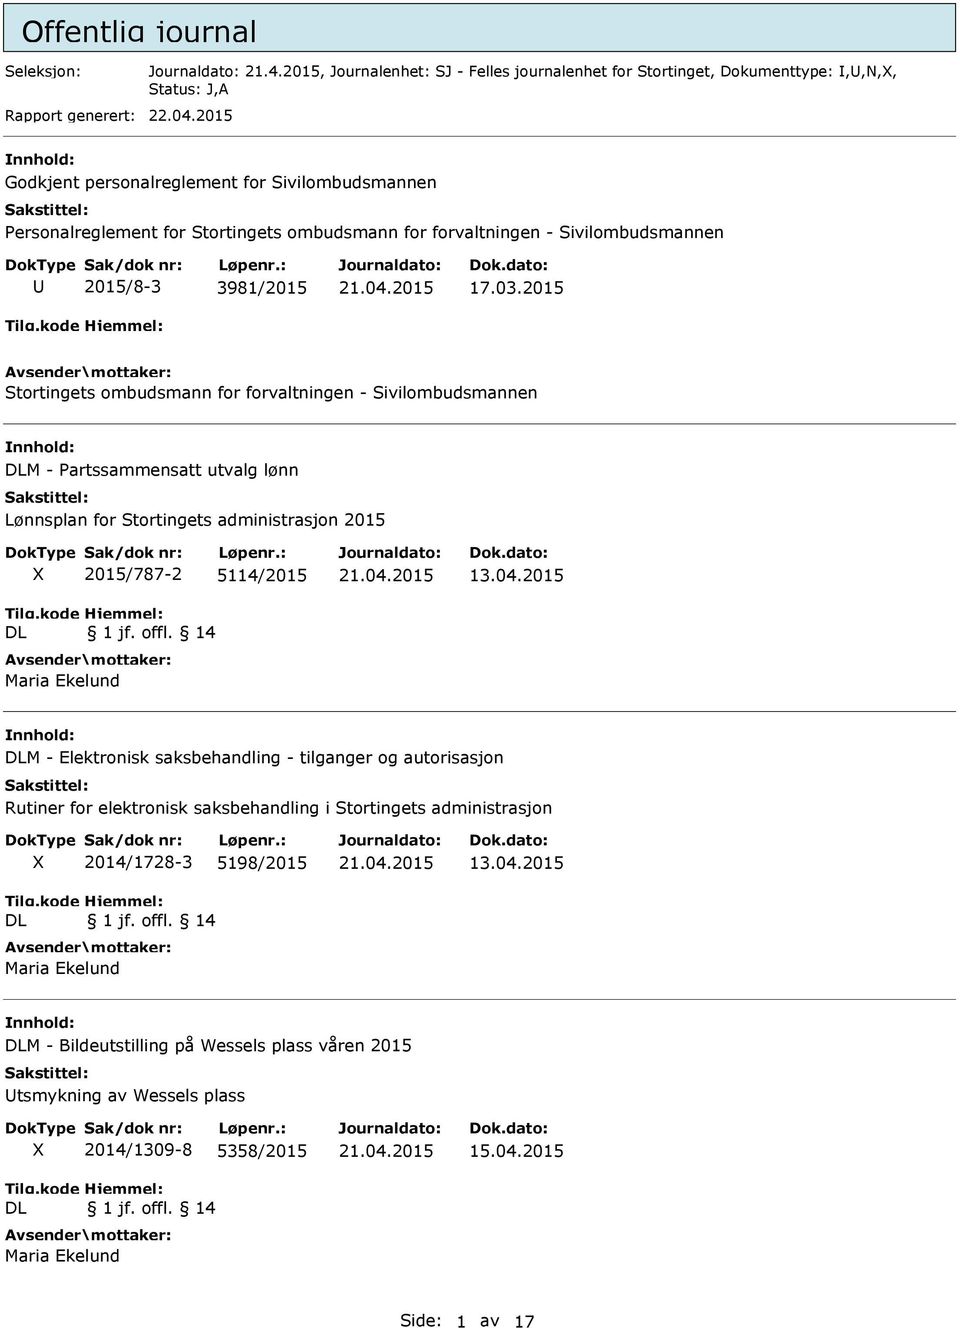 2015 Stortingets ombudsmann for forvaltningen - Sivilombudsmannen nnhold: DLM - Partssammensatt utvalg lønn Lønnsplan for Stortingets administrasjon 2015 DL 2015/787-2 5114/2015 1 jf. offl.